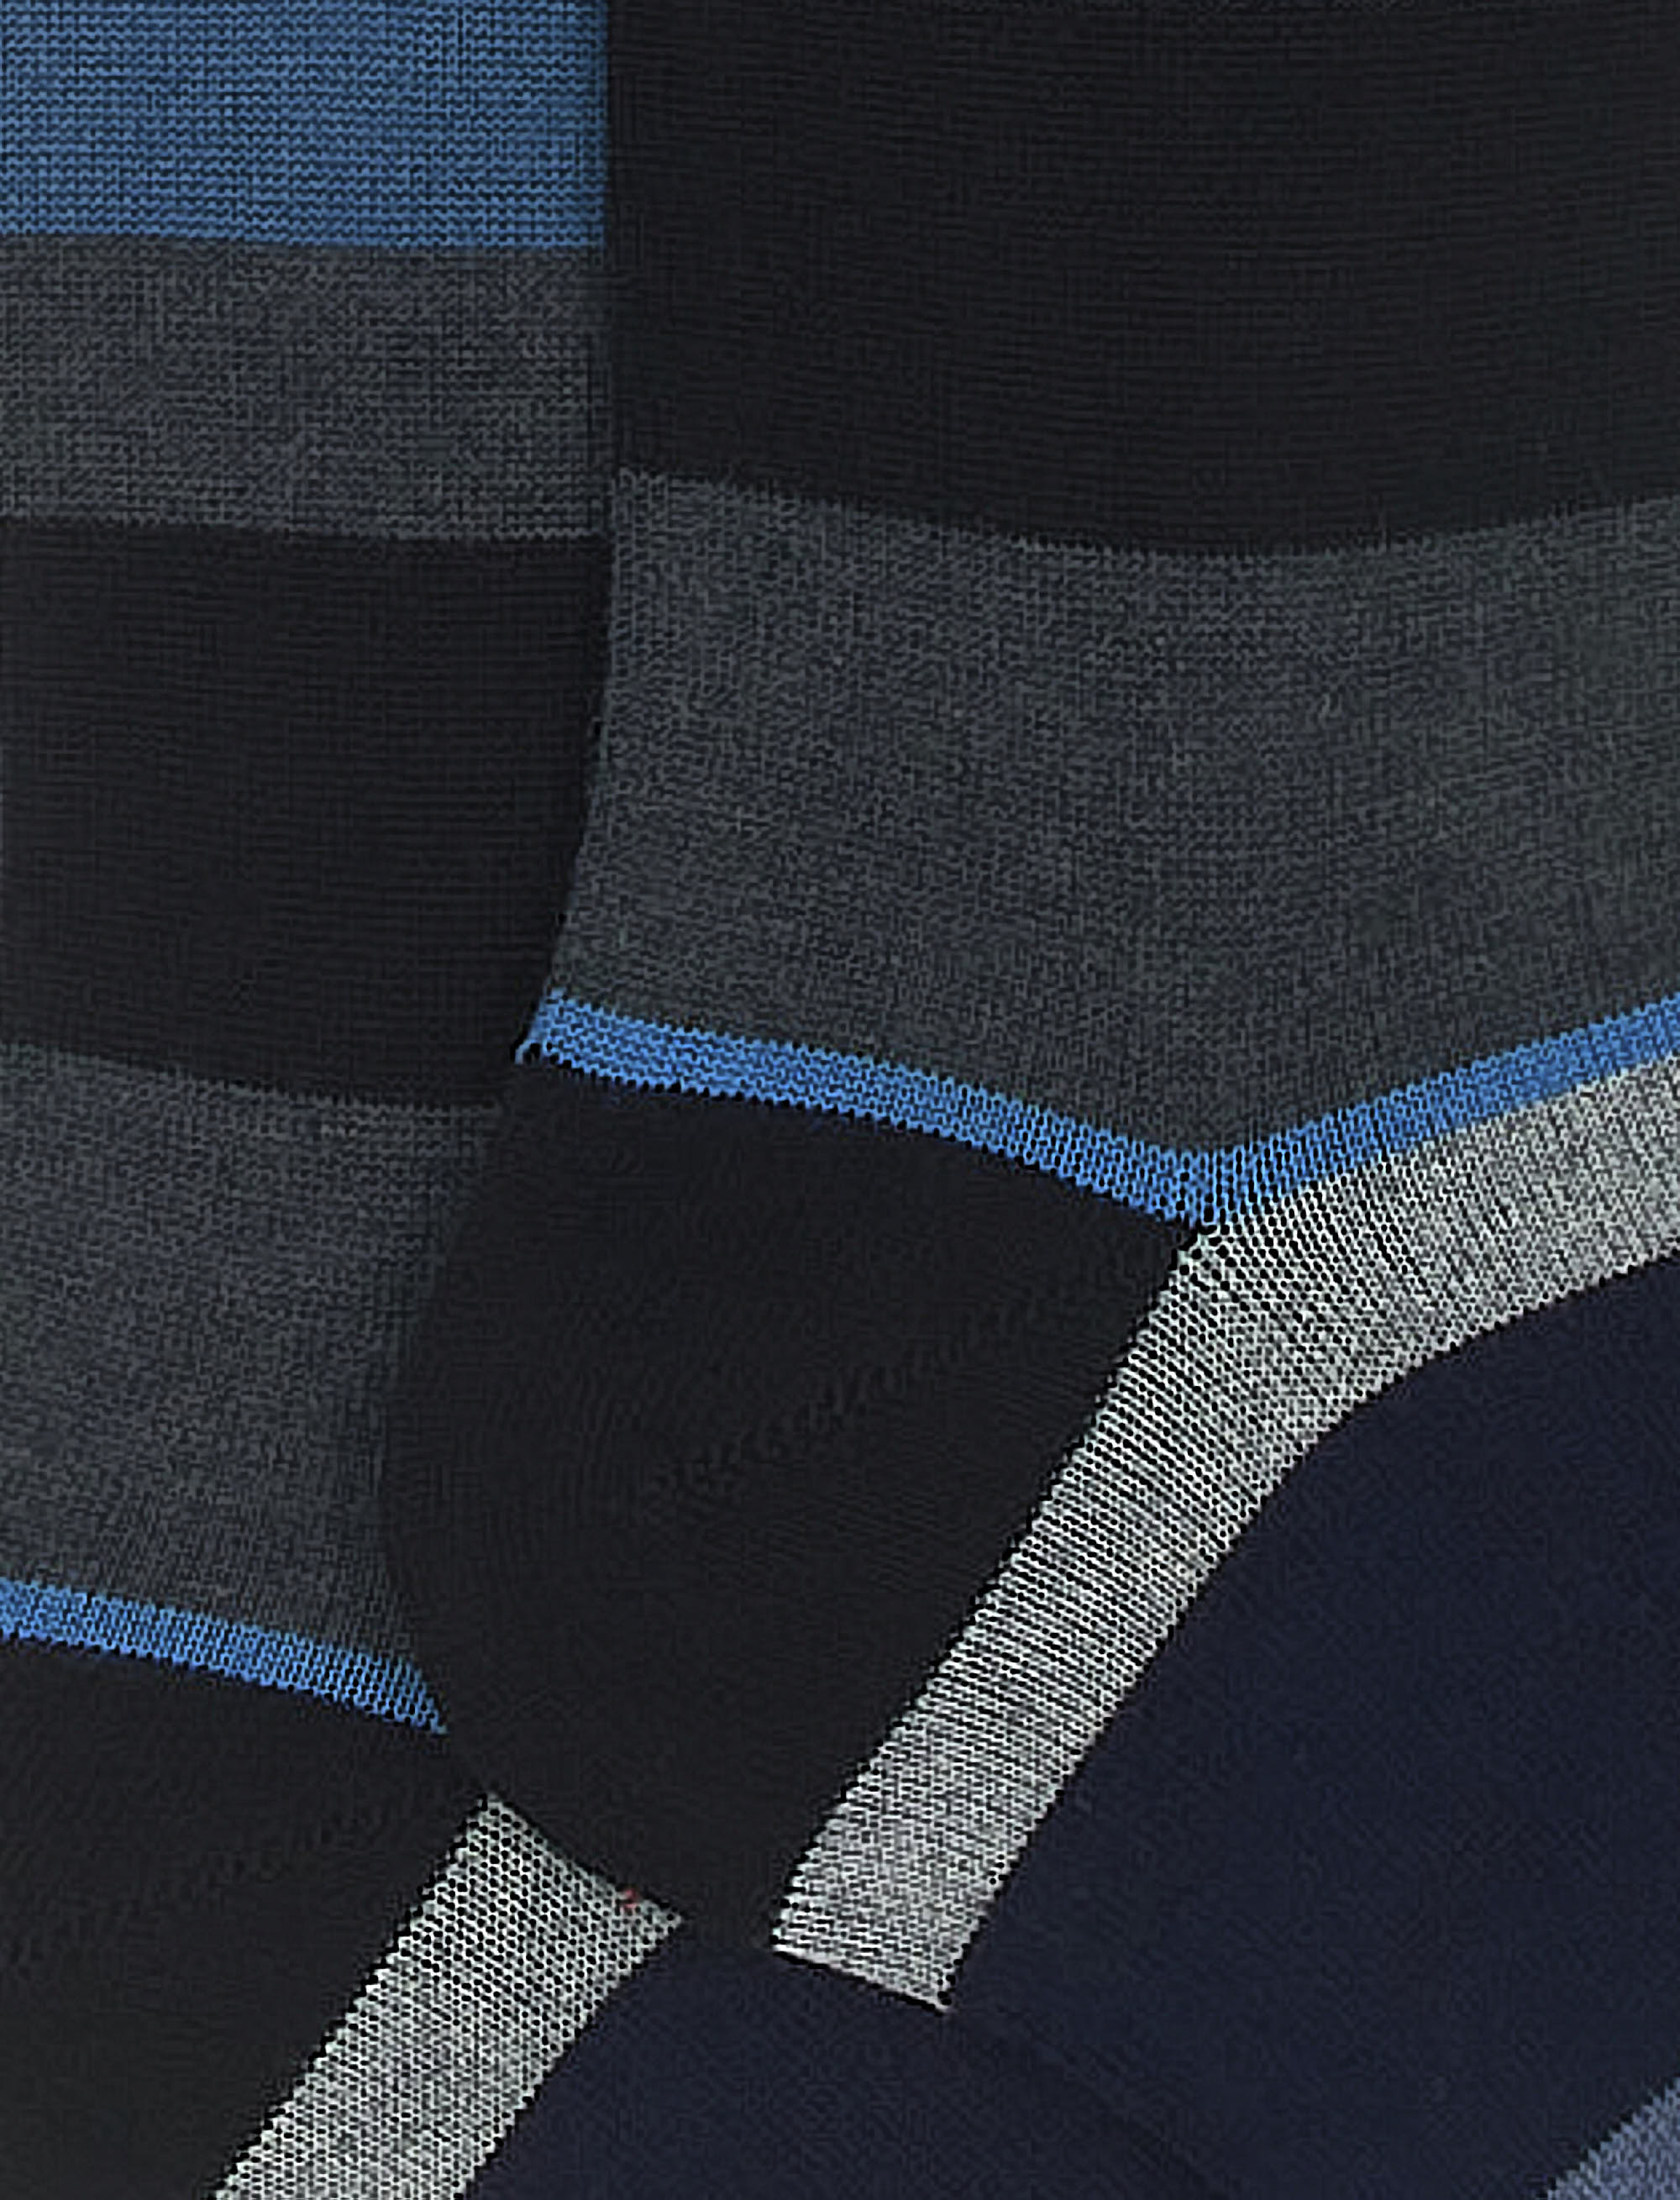 Calze lunghe donna cotone e cashmere nero righe multicolor macro - Gallo 1927 - Official Online Shop